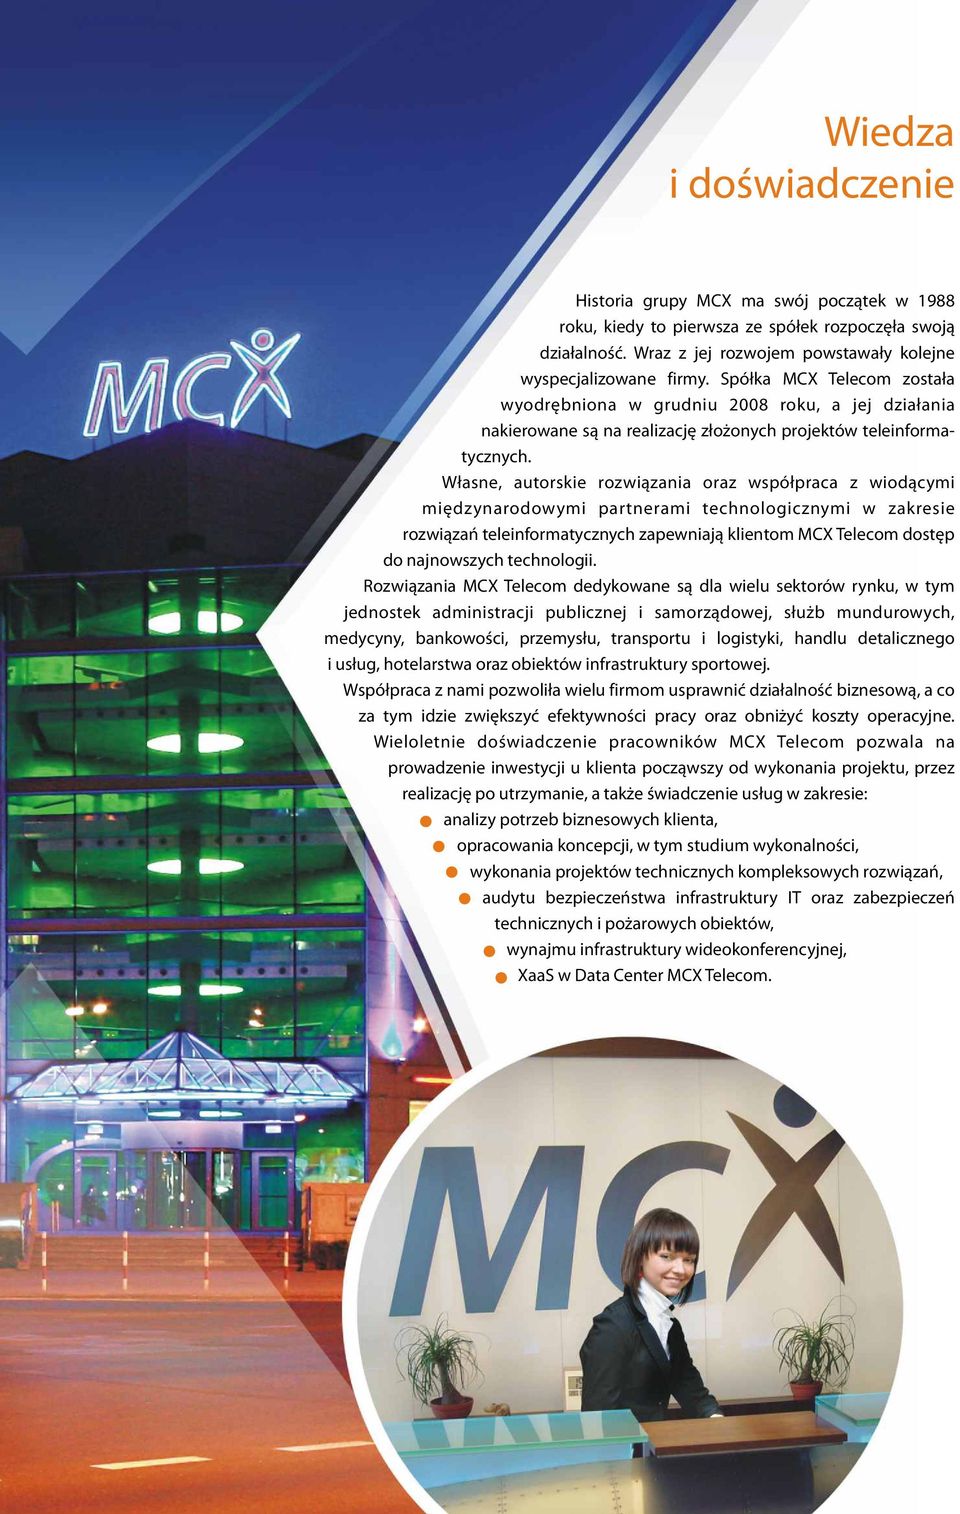 Własne, autorskie rozwiązania oraz współpraca z wiodącymi międzynarodowymi partnerami technologicznymi w zakresie rozwiązań teleinformatycznych zapewniają klientom MCX Telecom dostęp do najnowszych